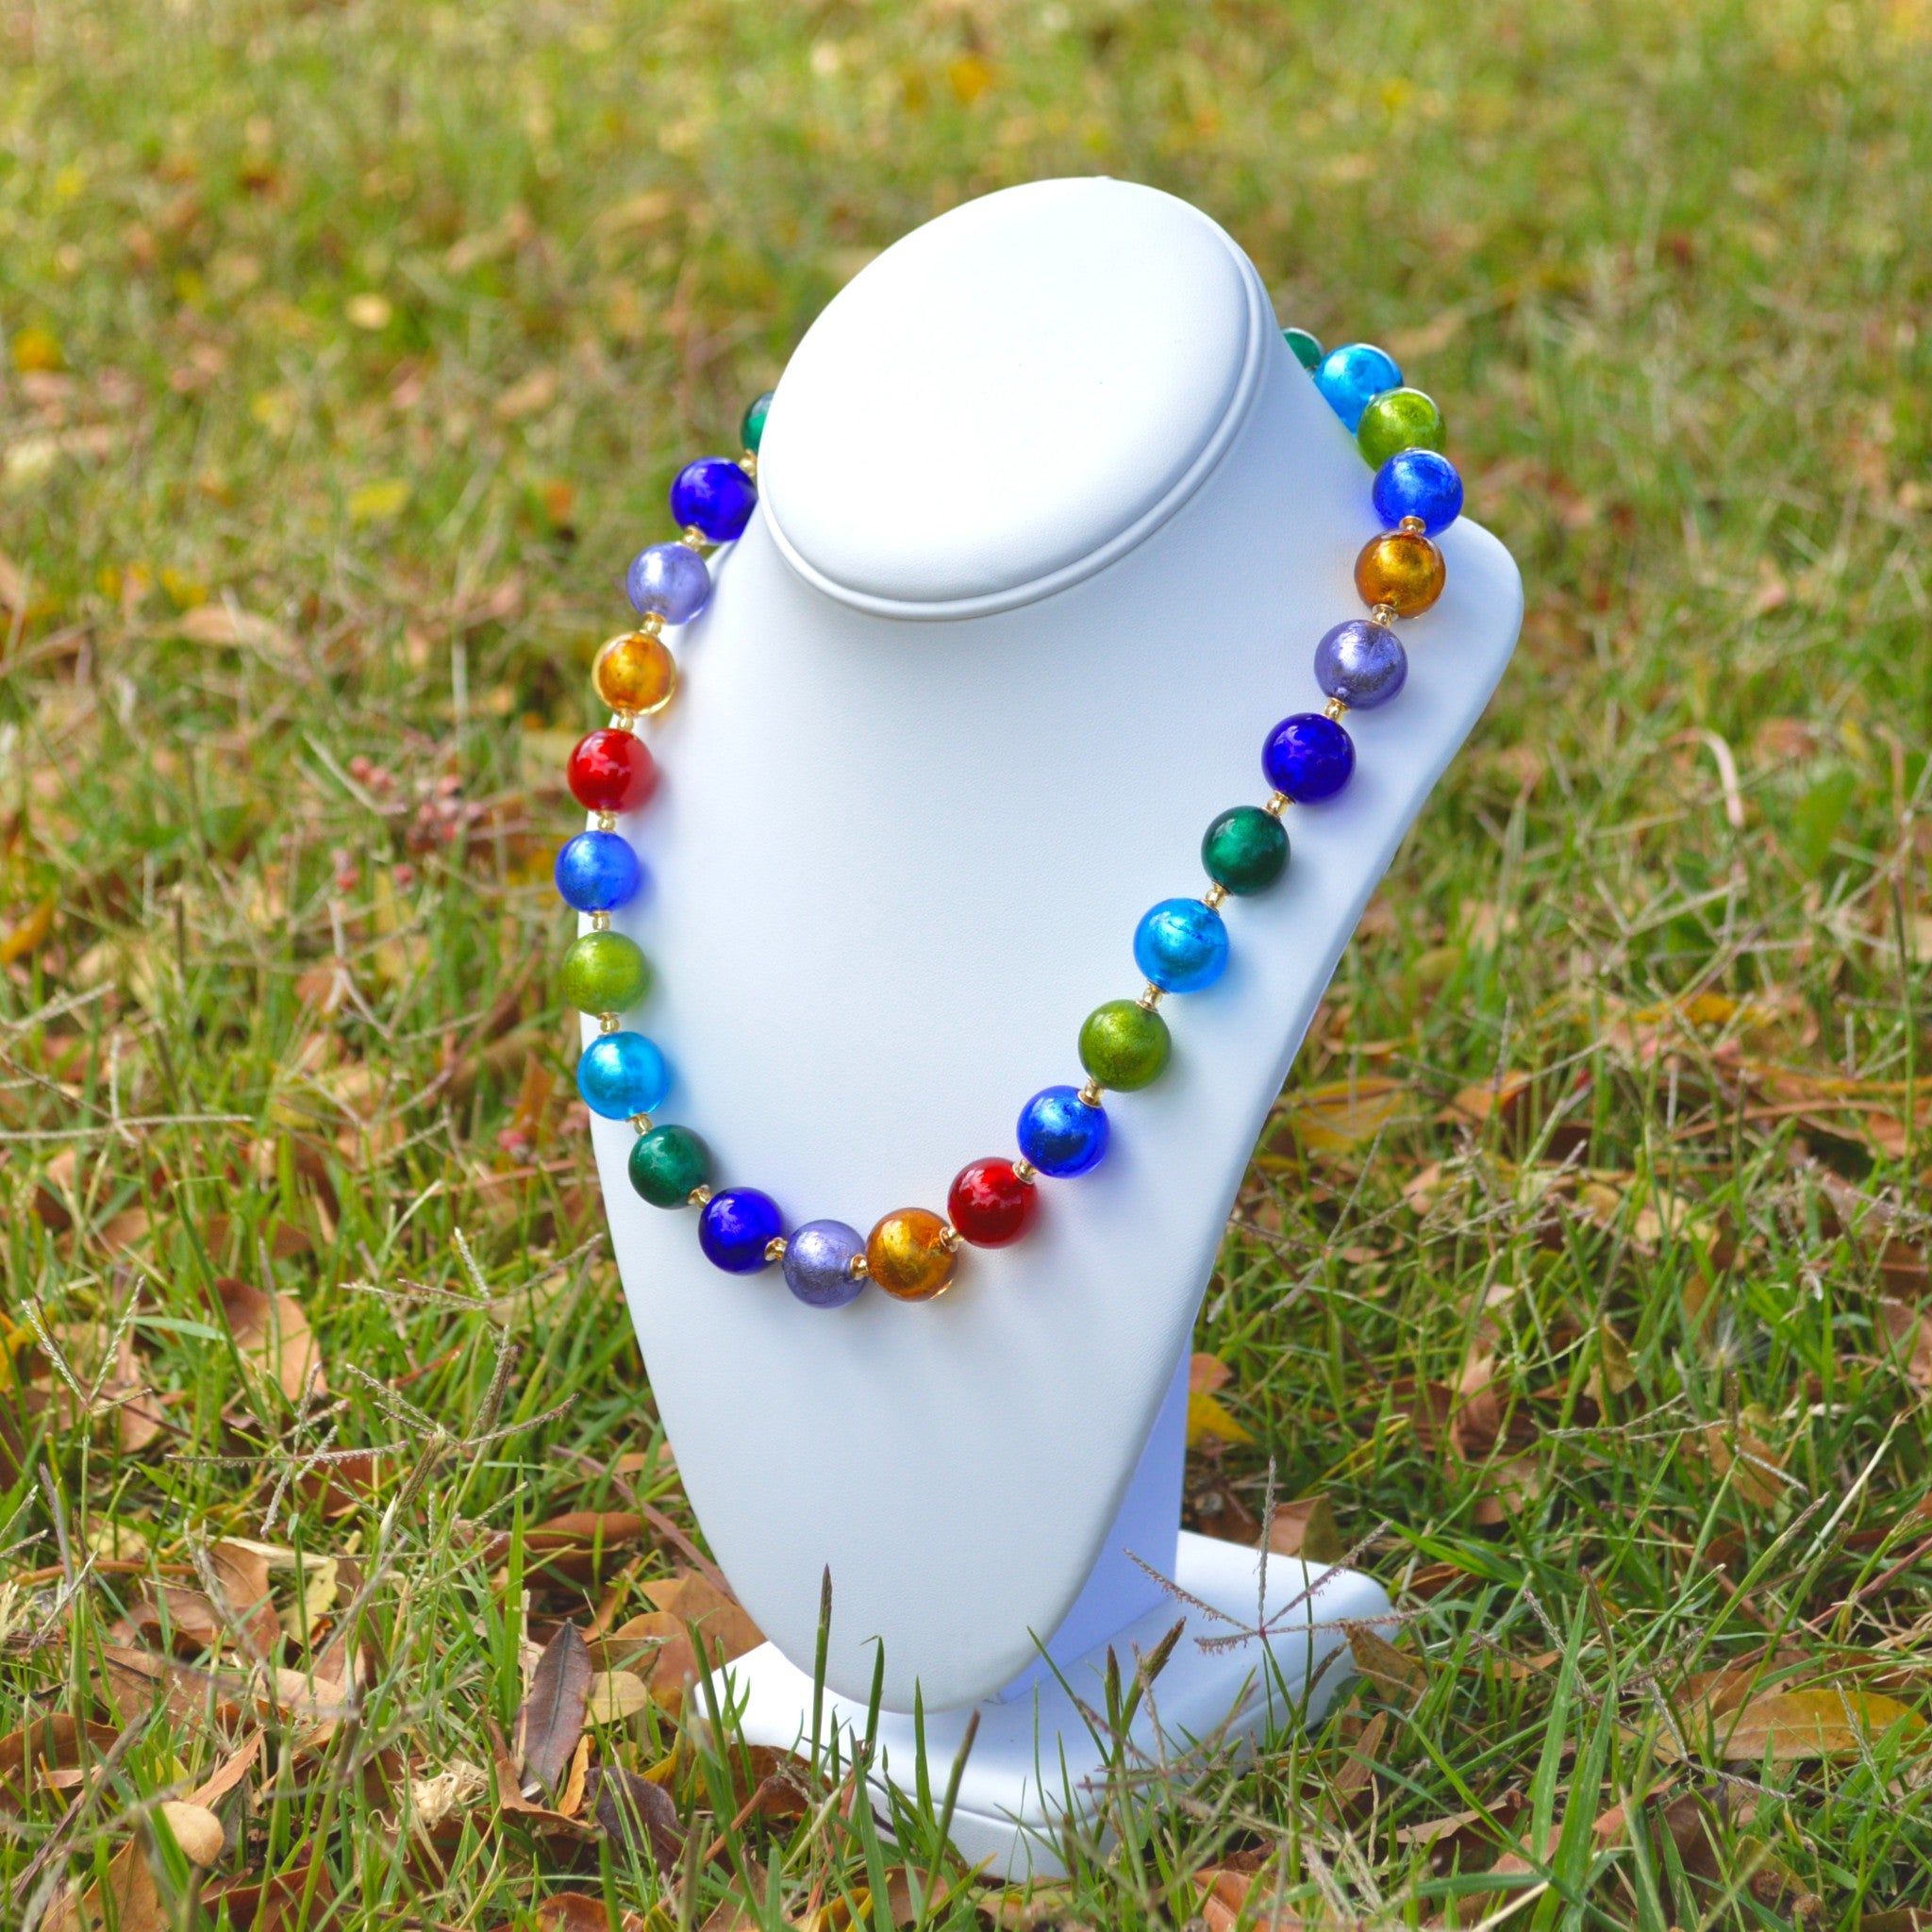 Murano Glass Bead Earrings, Murano Glass Making Beads